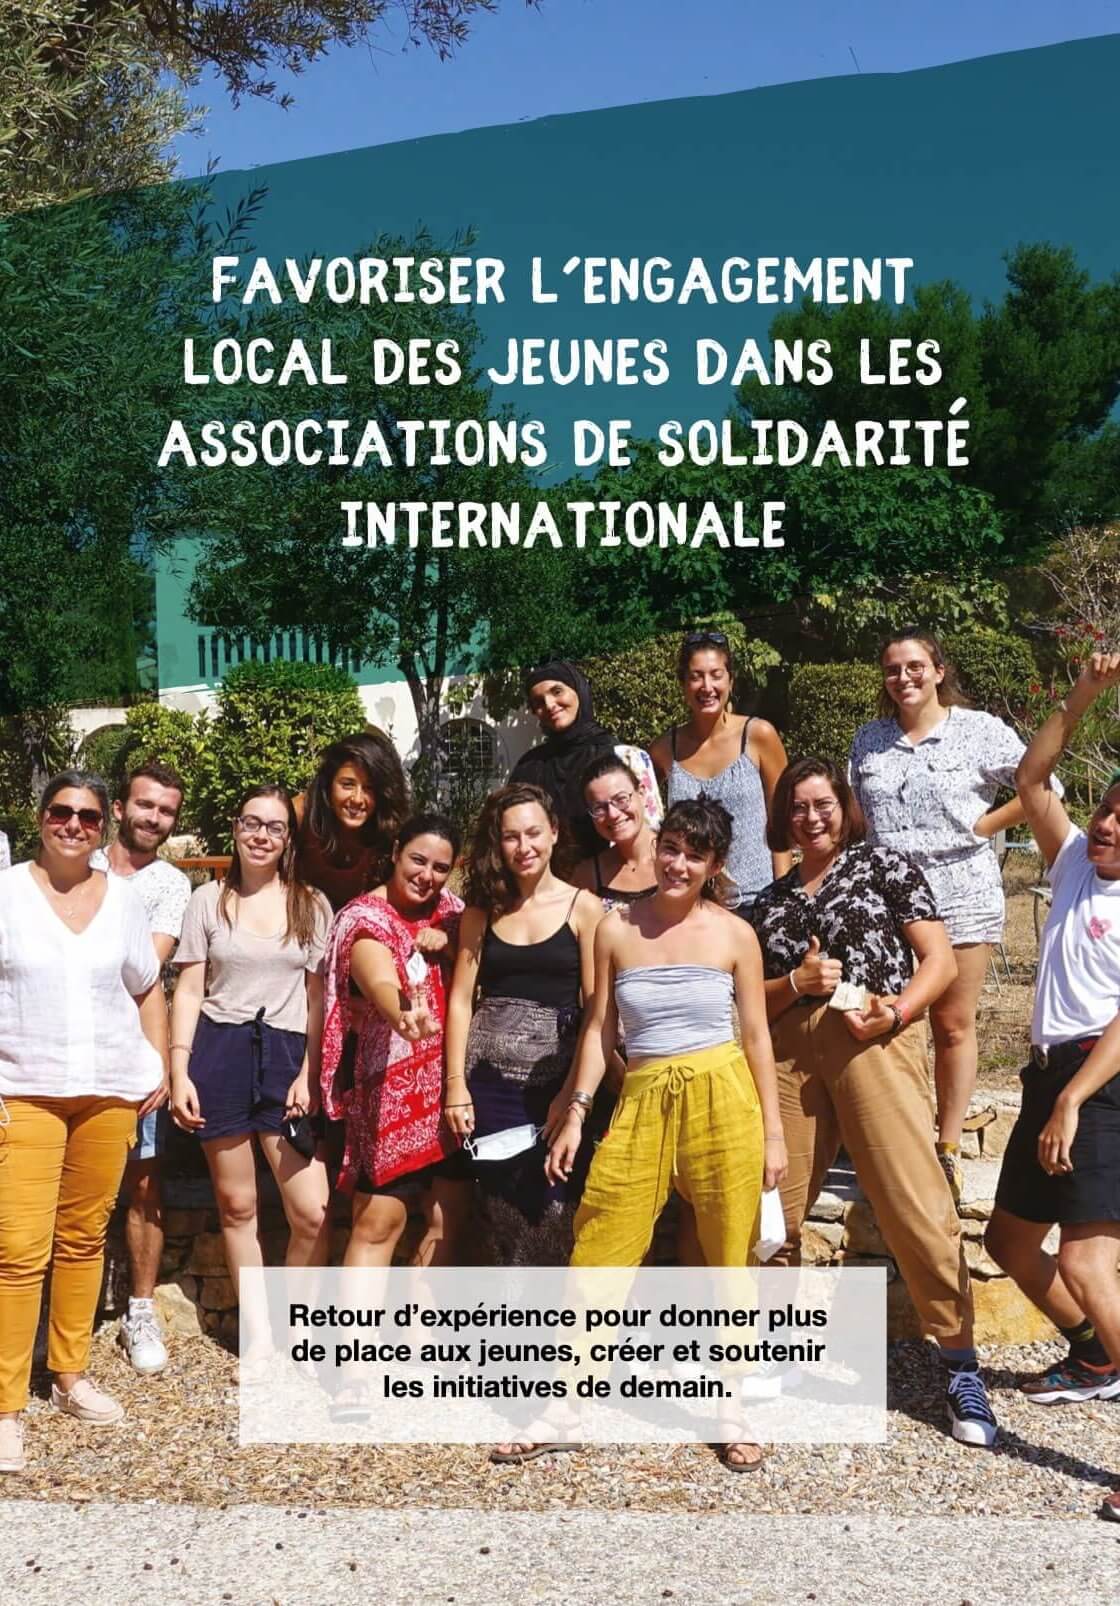 favoriser-lengagement-local-des-jeunes-dans-les-associations-de-solidarite-internationale